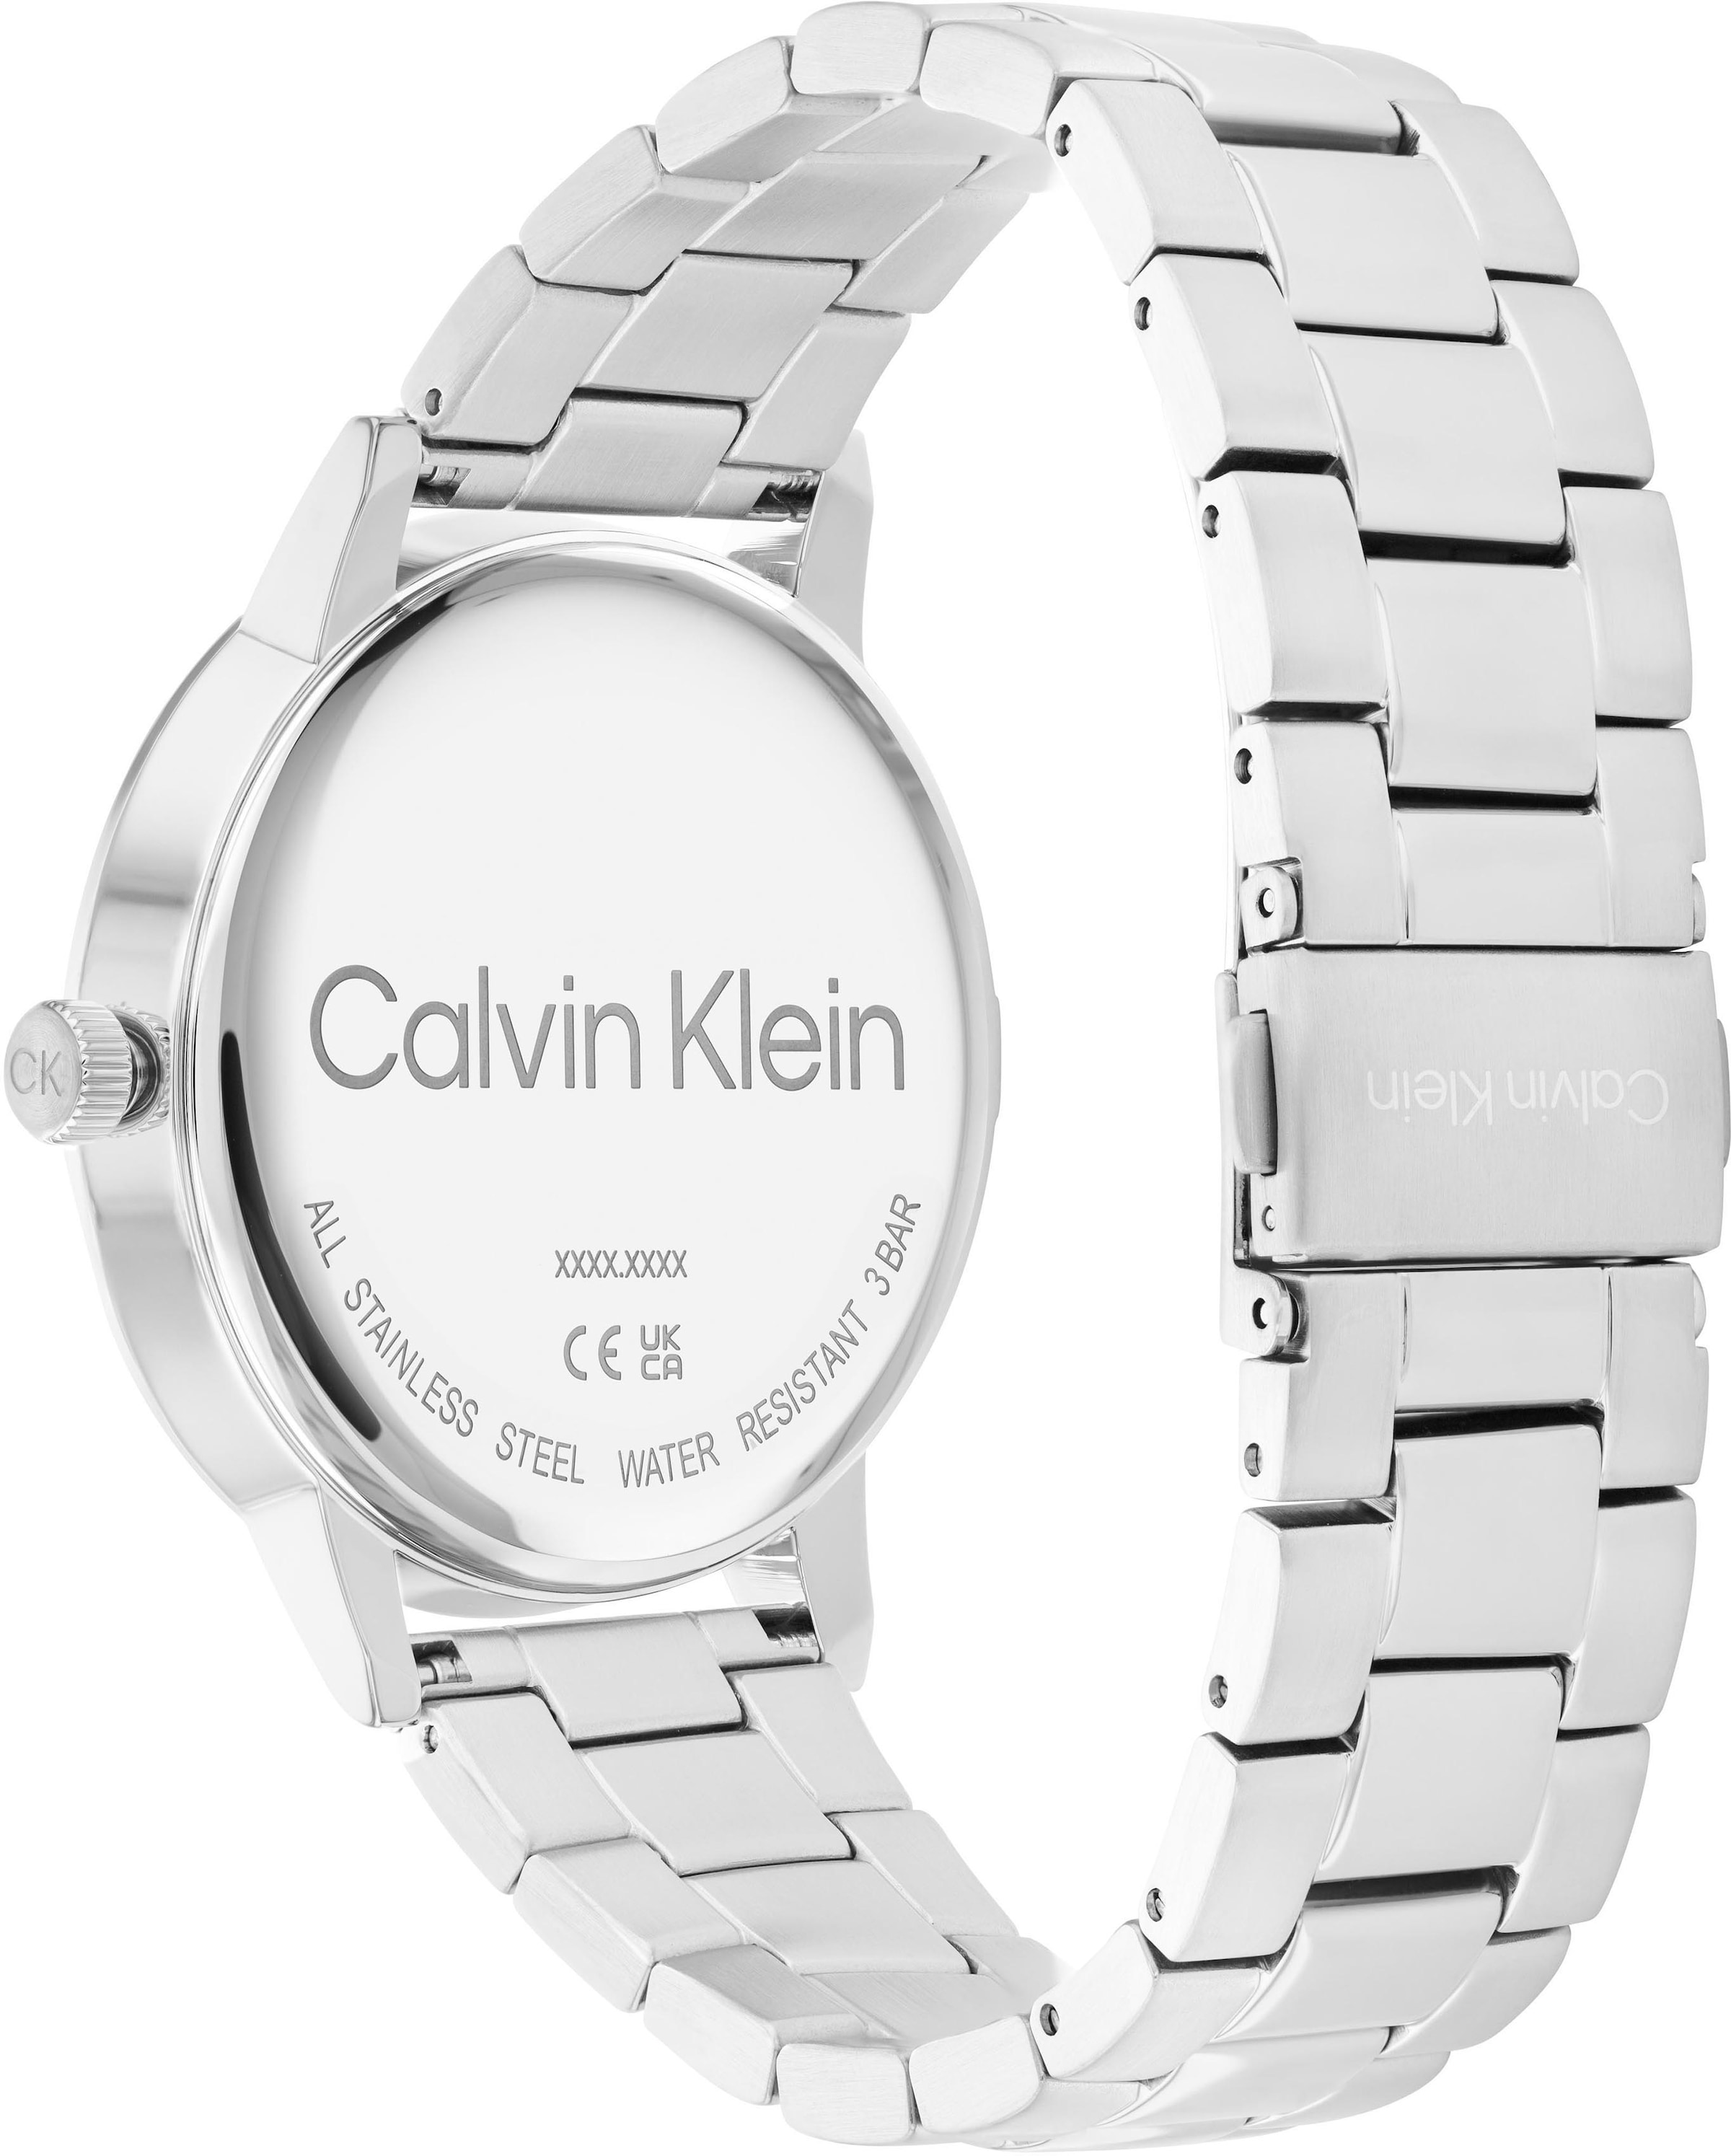 Calvin Klein Quarzuhr »Linked, 25200053« online kaufen